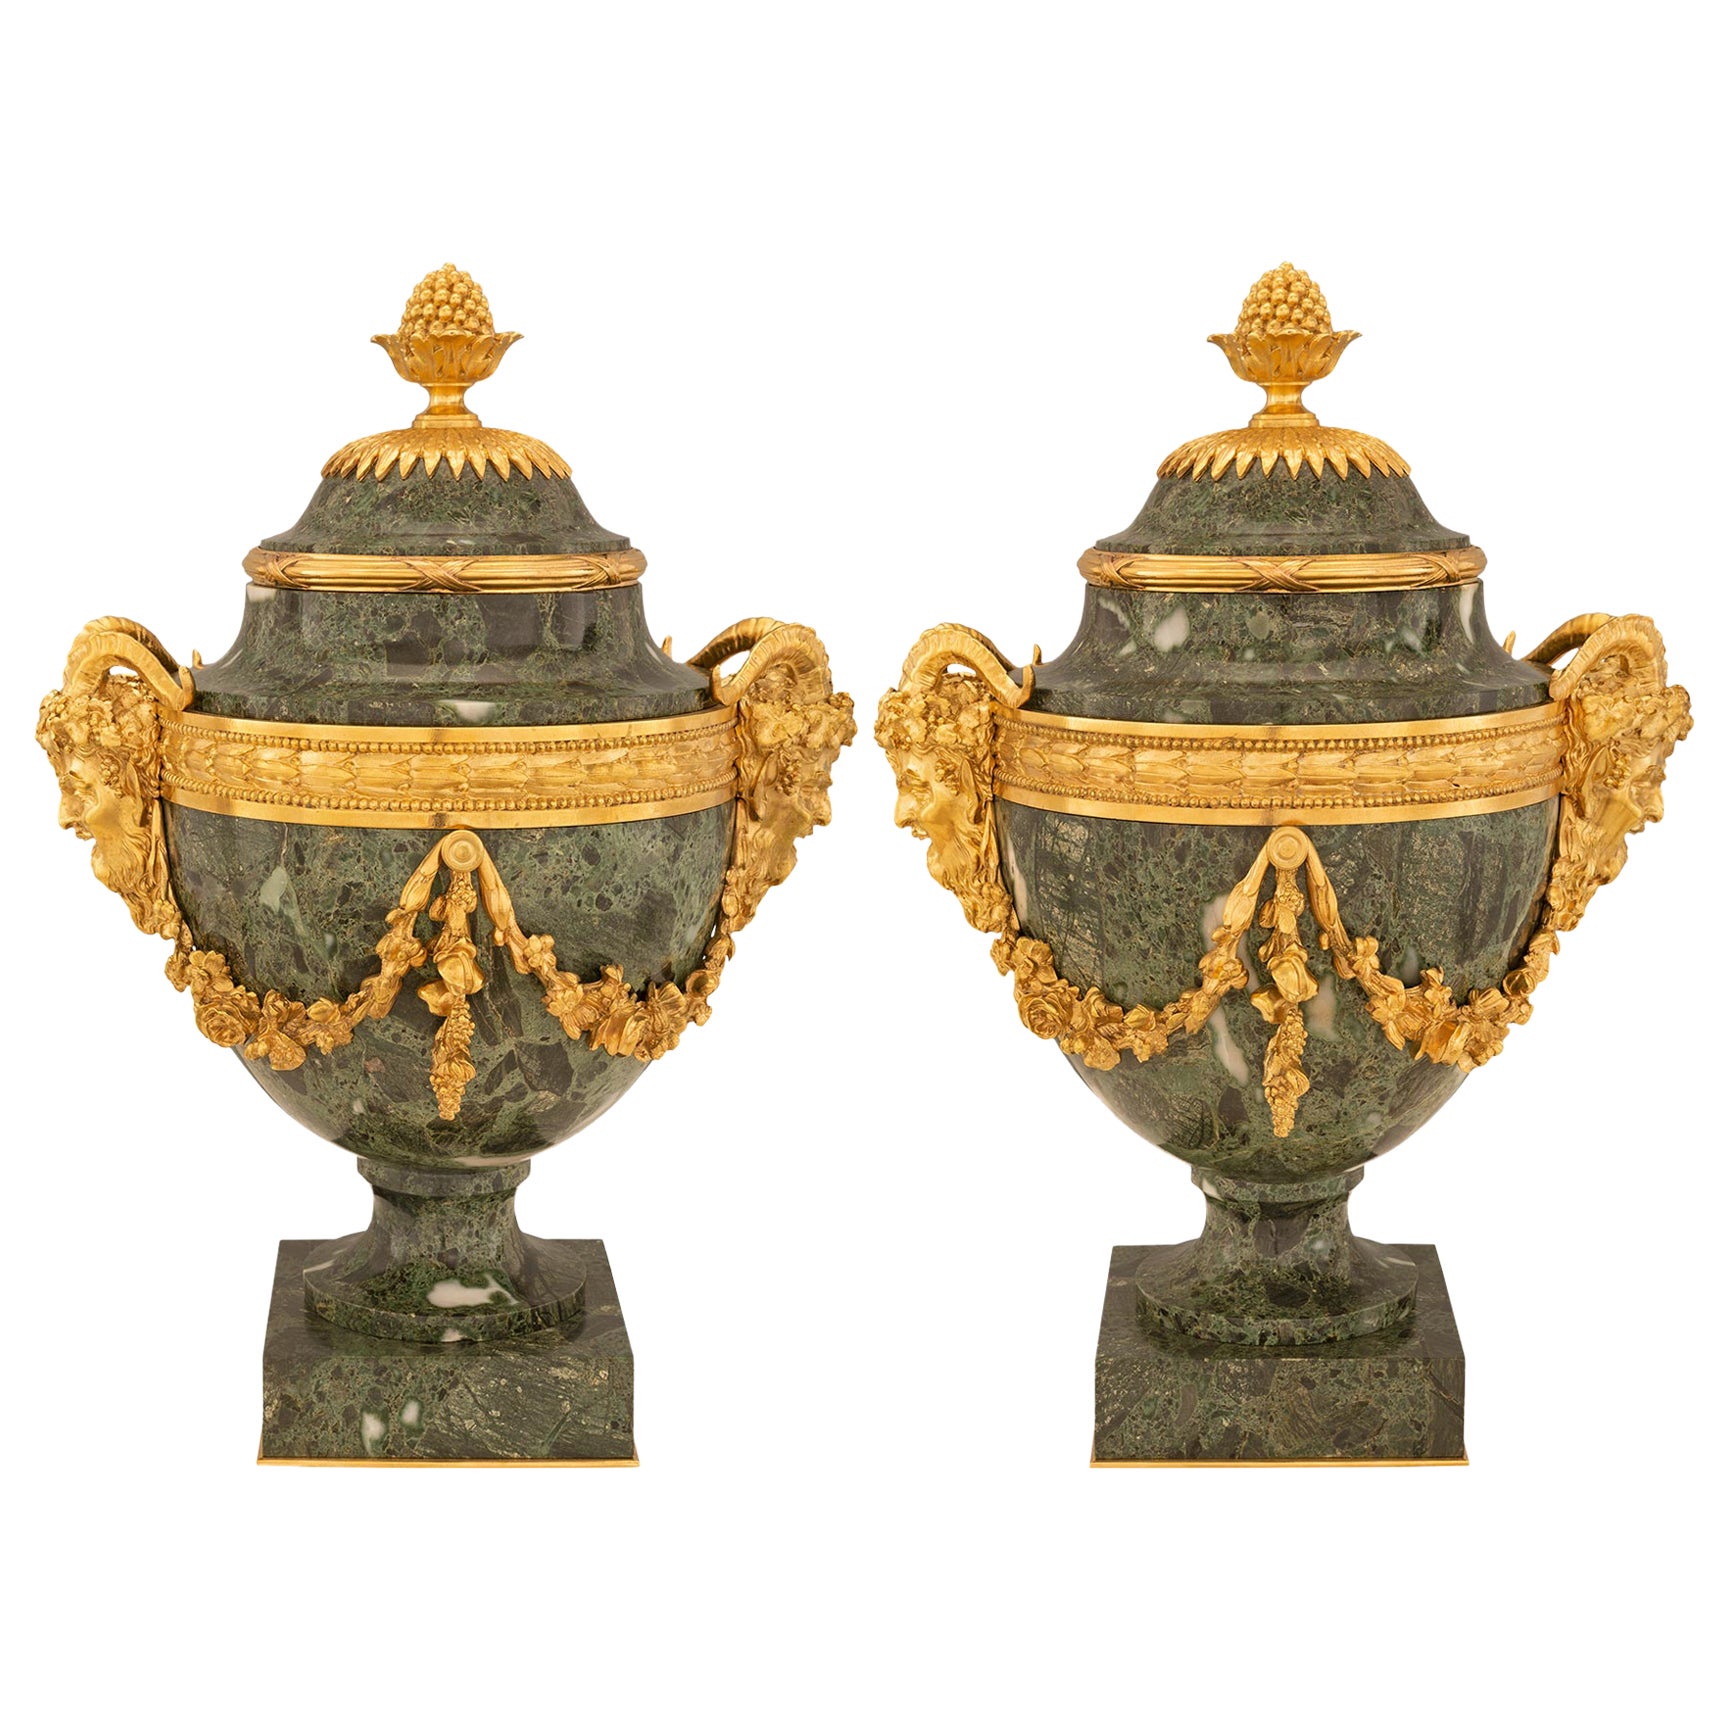 Paire d'urnes en marbre et bronze doré d'époque Belle Époque du XIXe siècle